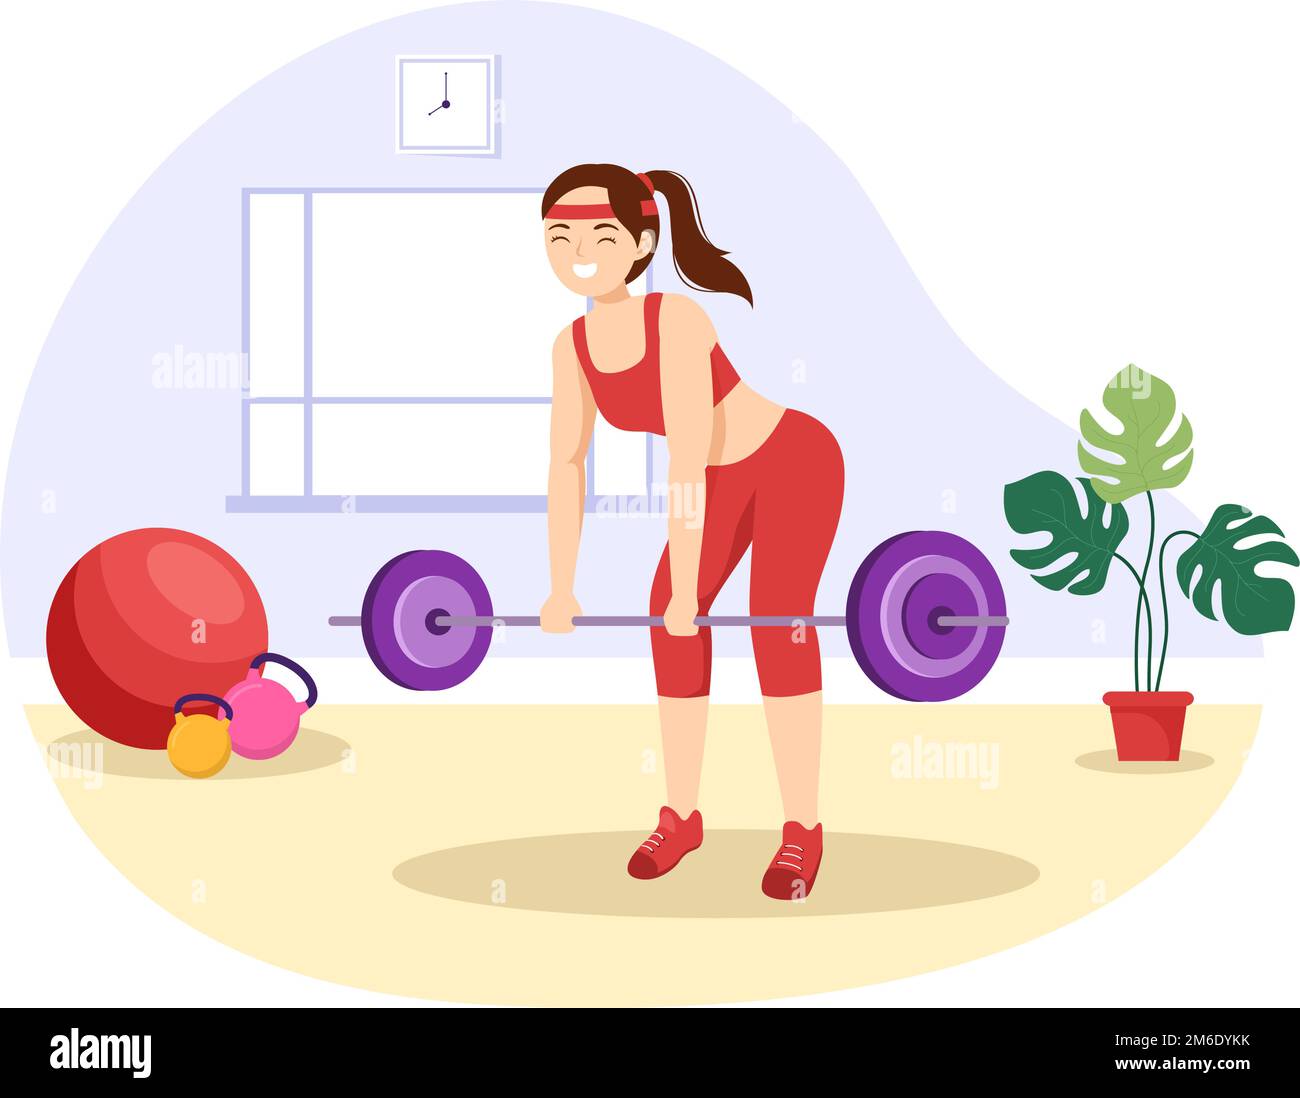 Weightlifting Sport Illustration with Athlete solleva un Barbell pesante, attrezzature per palestra e allestitori in modelli disegnati a mano su cartoni piatti Illustrazione Vettoriale